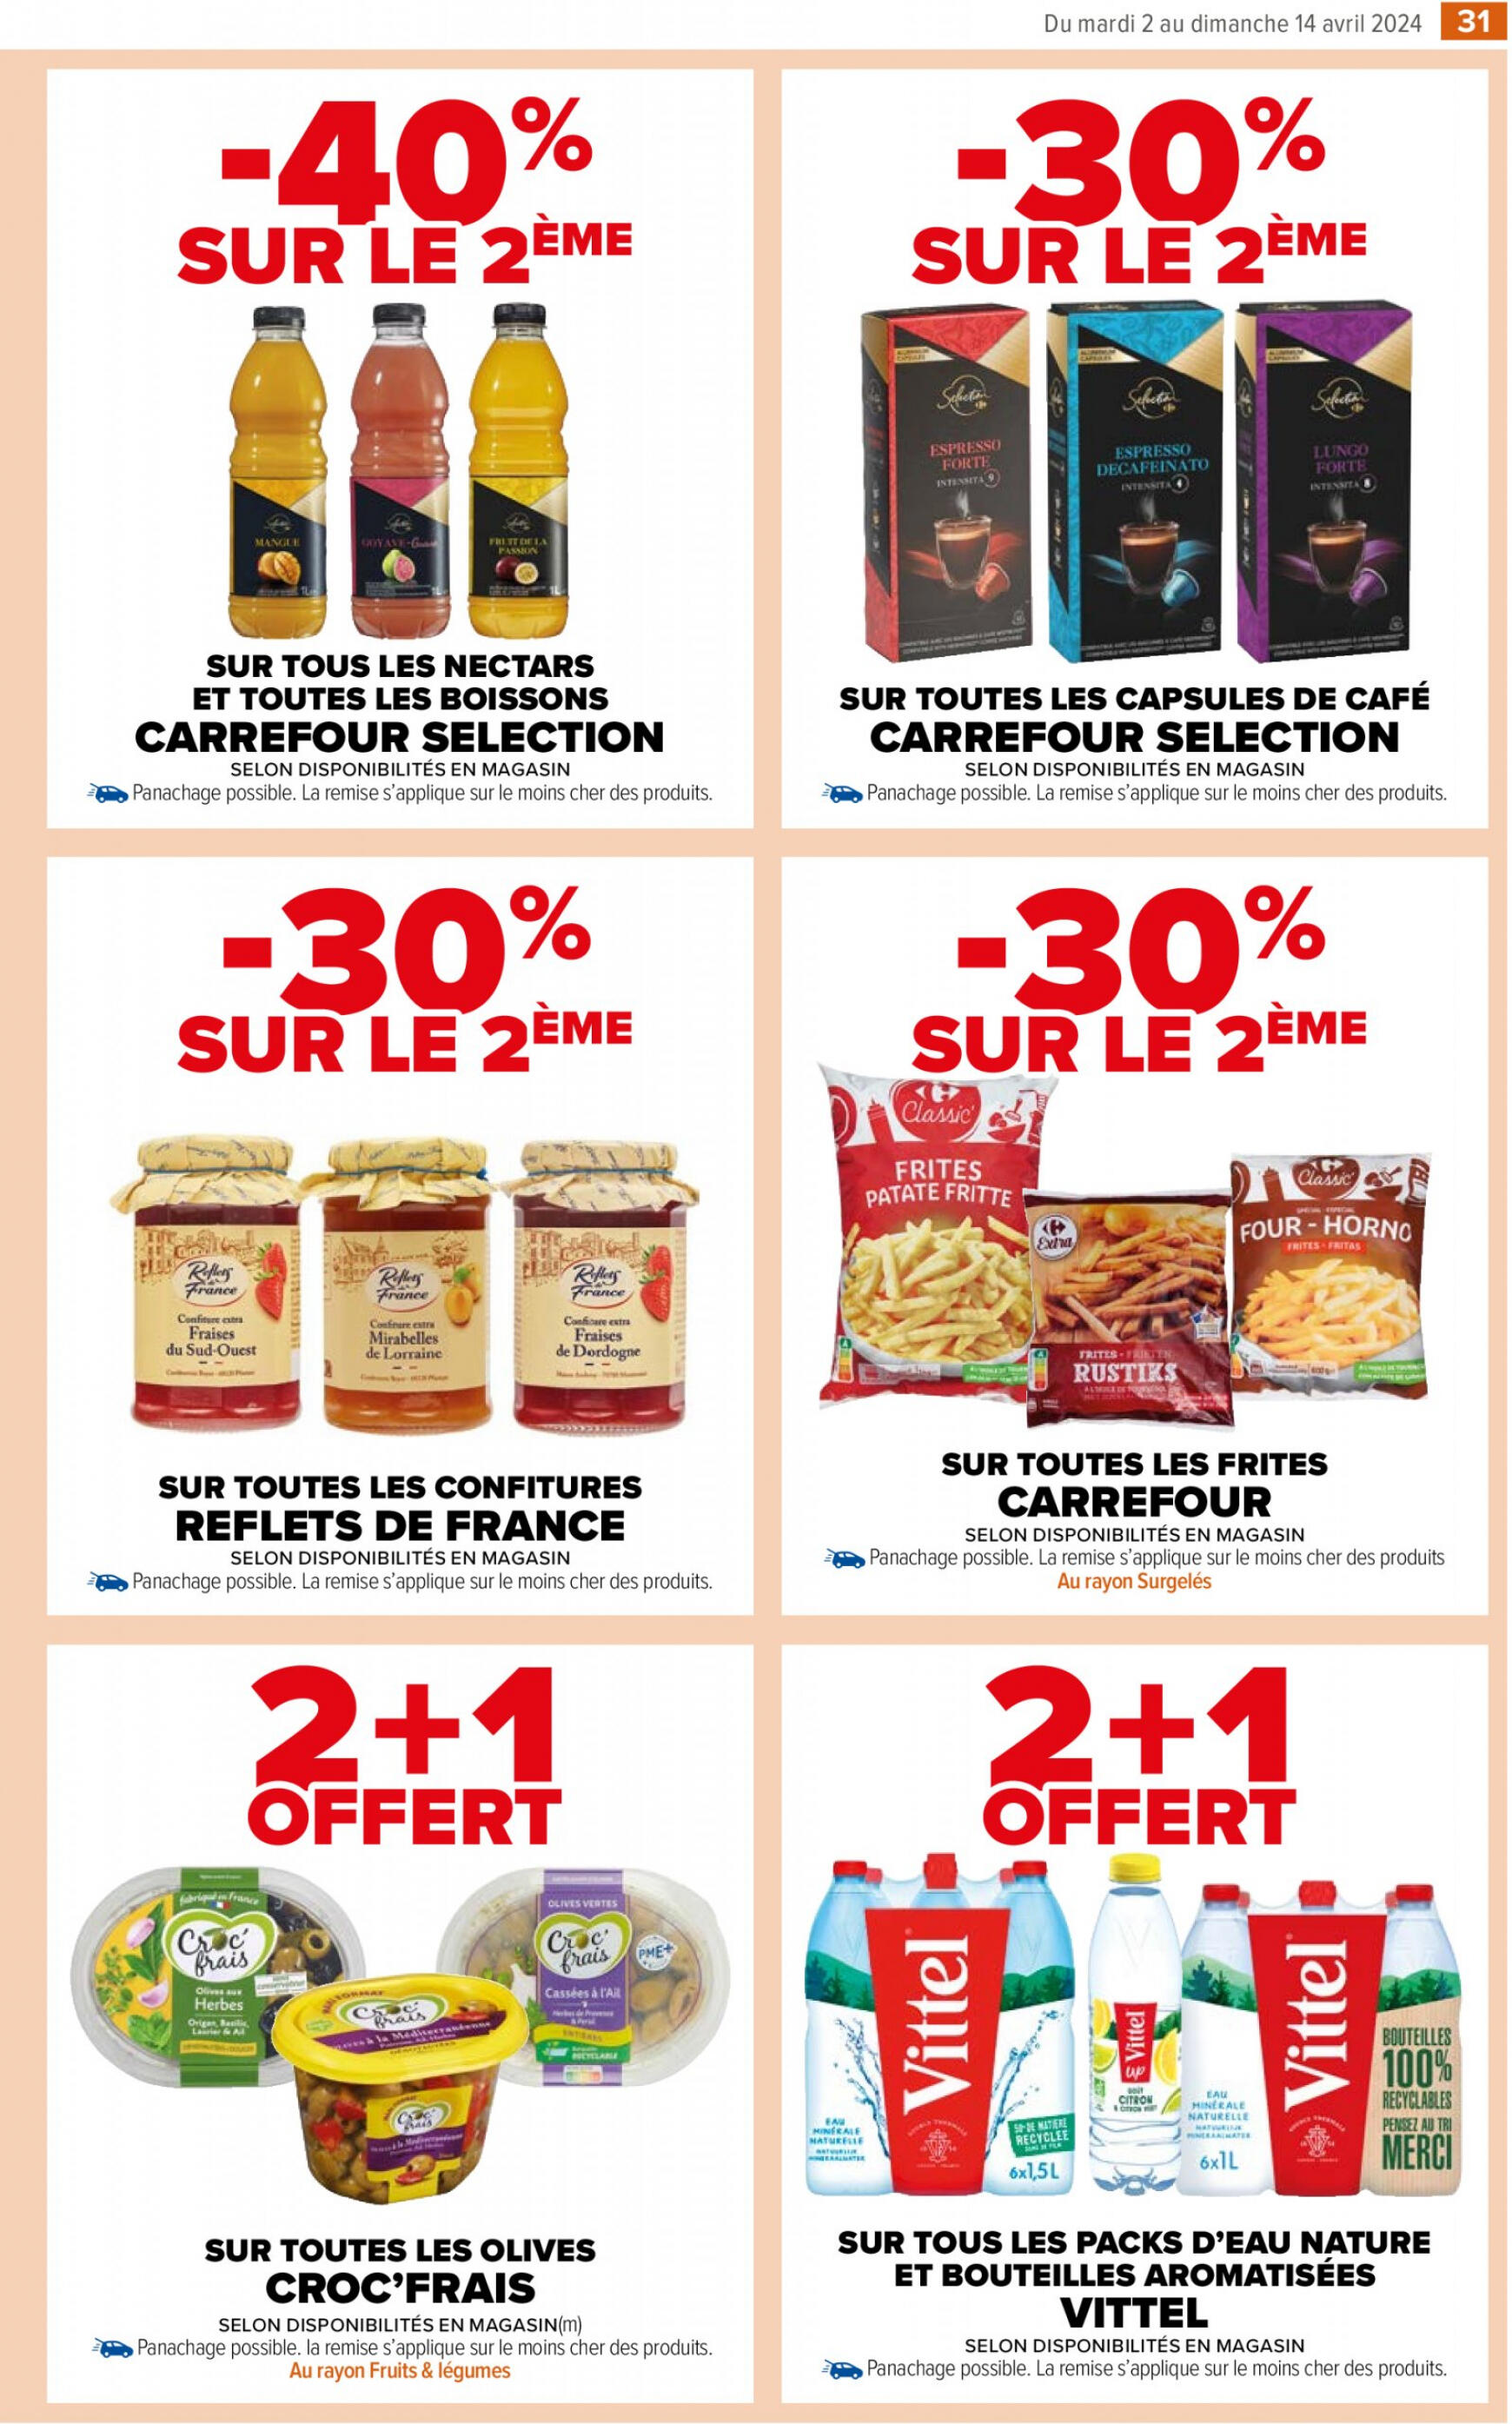 carrefour-market - Carrefour Market - Un MIAM pour les produits laitiers valable à partir de 02.04.2024 - page: 35